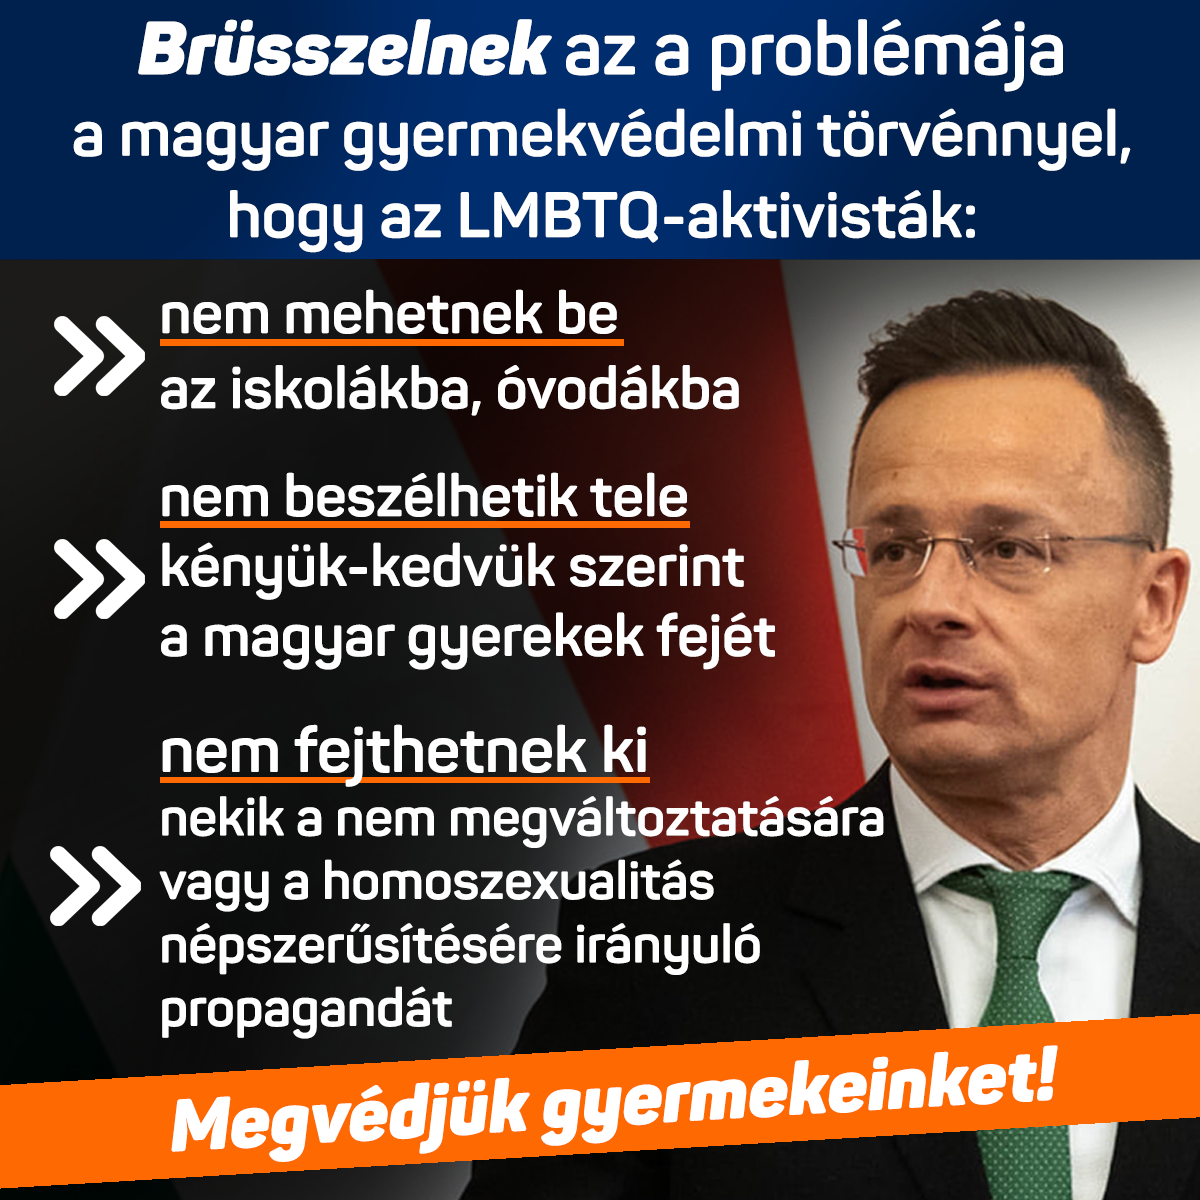 Brüsszelnek az a problémája a magyar gyermekvédelmi törvénnyel, hogy az LMBTQ-aktivisták nem mehetnek be az iskolákba, óvodákba, nem beszélhetik tele kényük-kedvük szerint a magyar gyerekek fejét és nem fejthetnek ki nekik a nem megváltoztatására vagy a homoszexualitás népszerűsítésére irányuló propagandát. Megvédjük gyermekeinket!